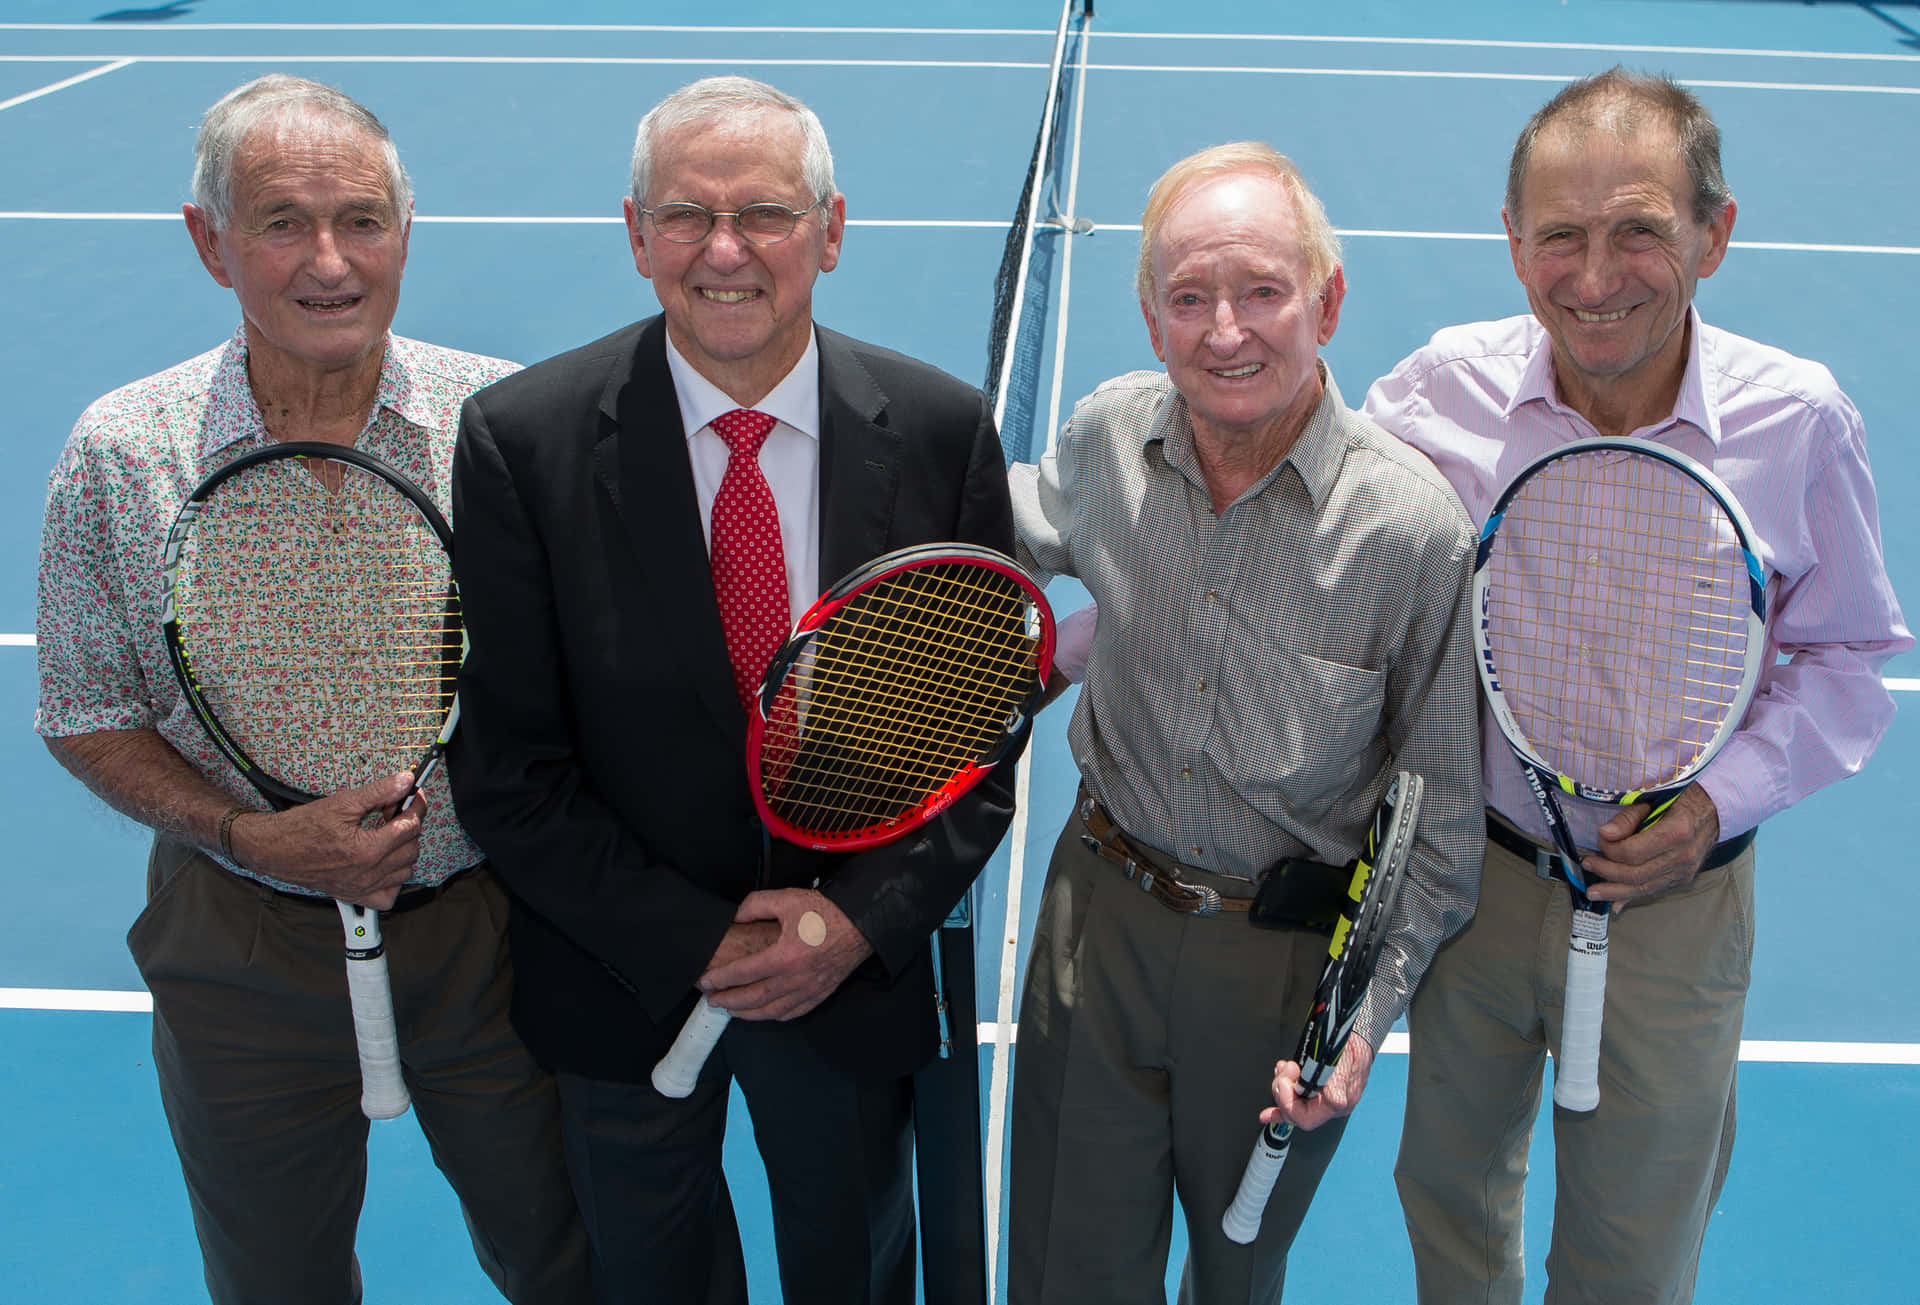 Formere Tennisspillere på Roy Emerson Tennis Center dækker væggen Wallpaper